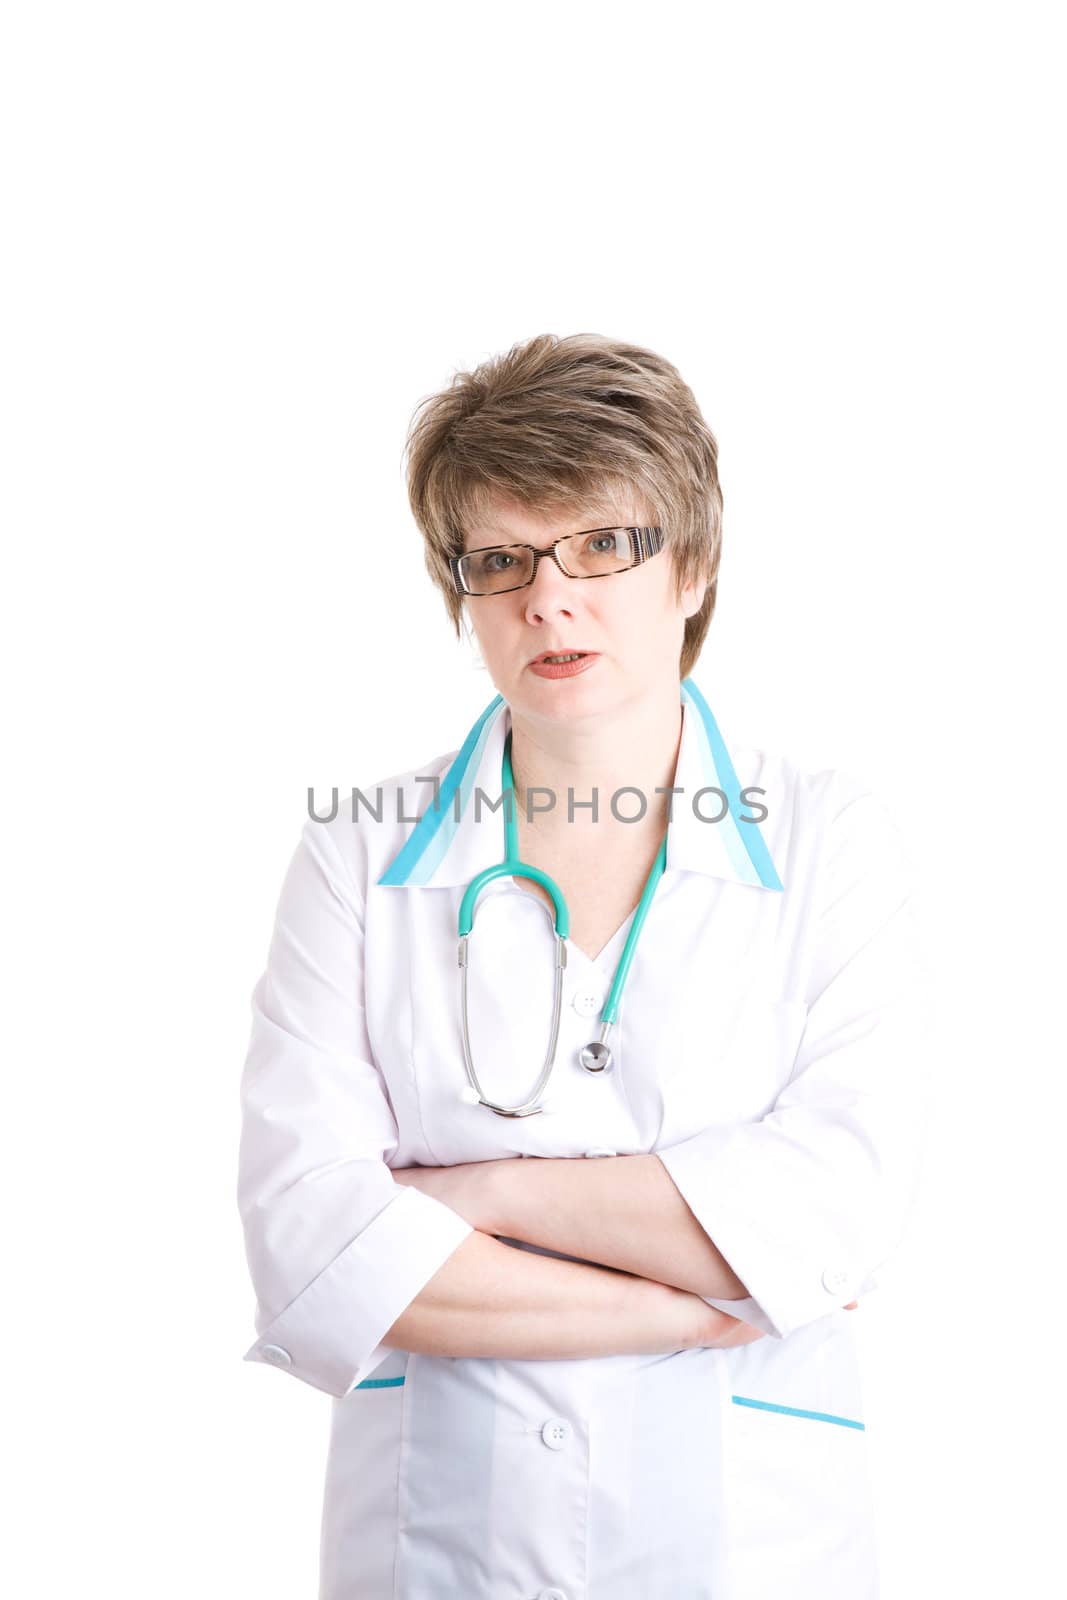 doctor by vsurkov